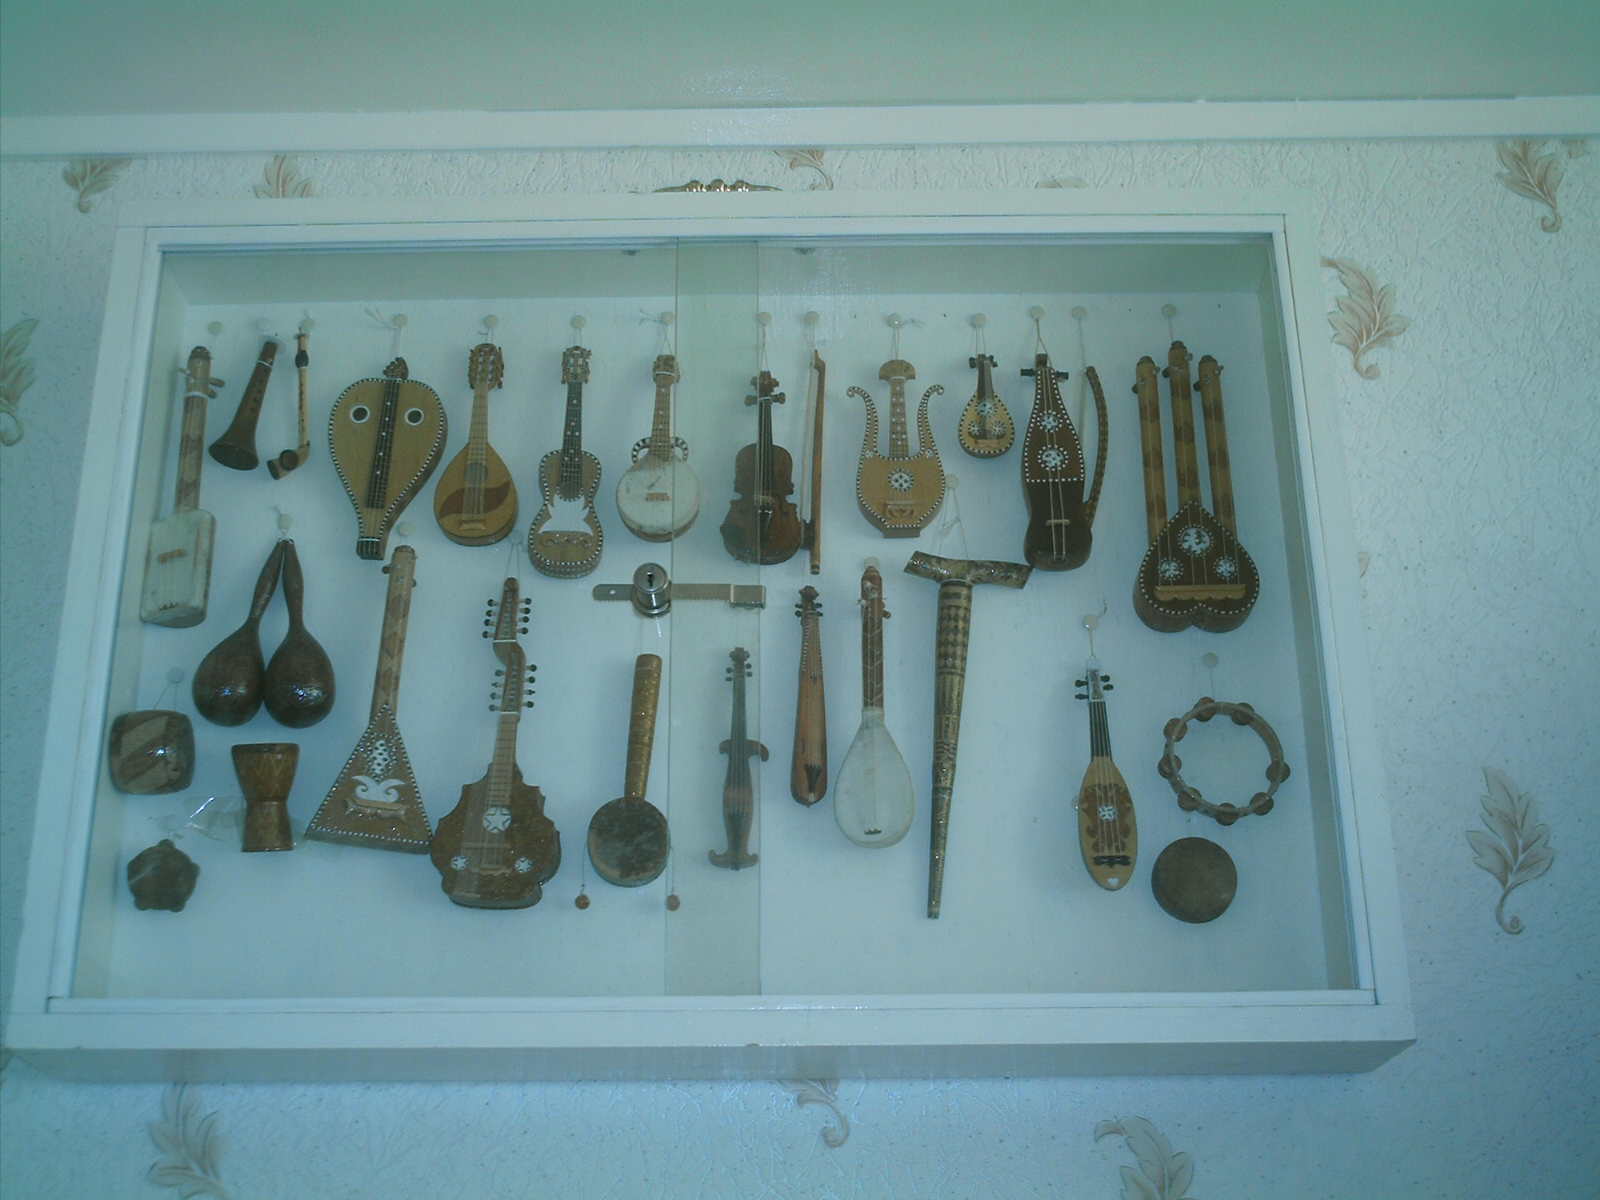 vue d'ensembles de mes instruments de musique miniature